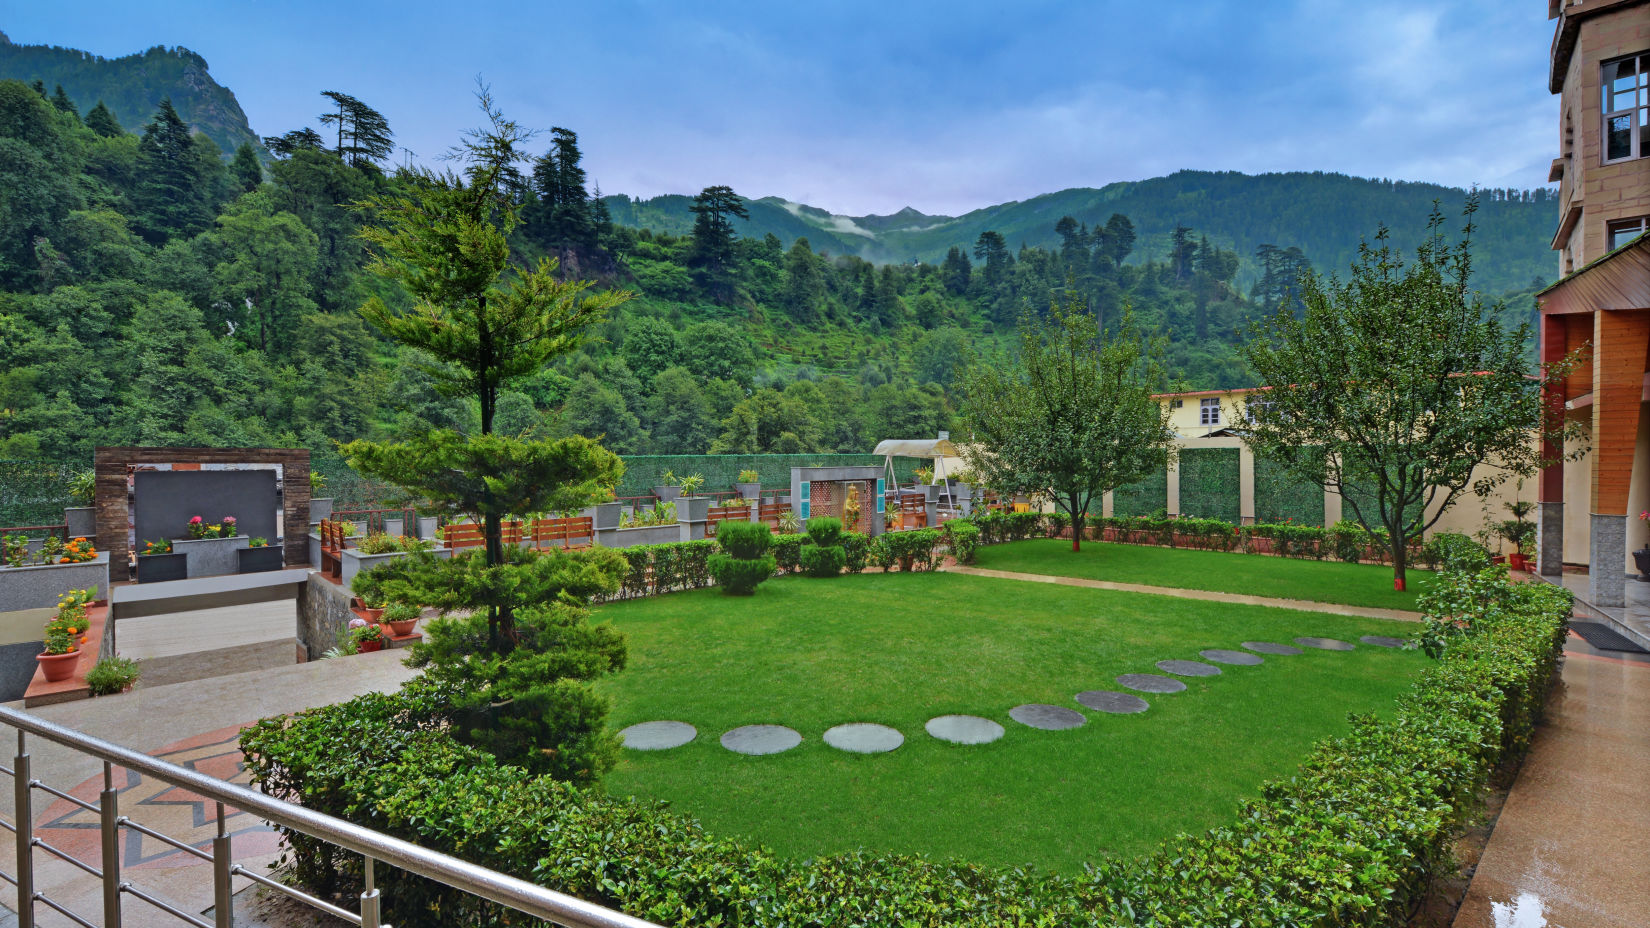 Garden at The Manali Inn Hotel